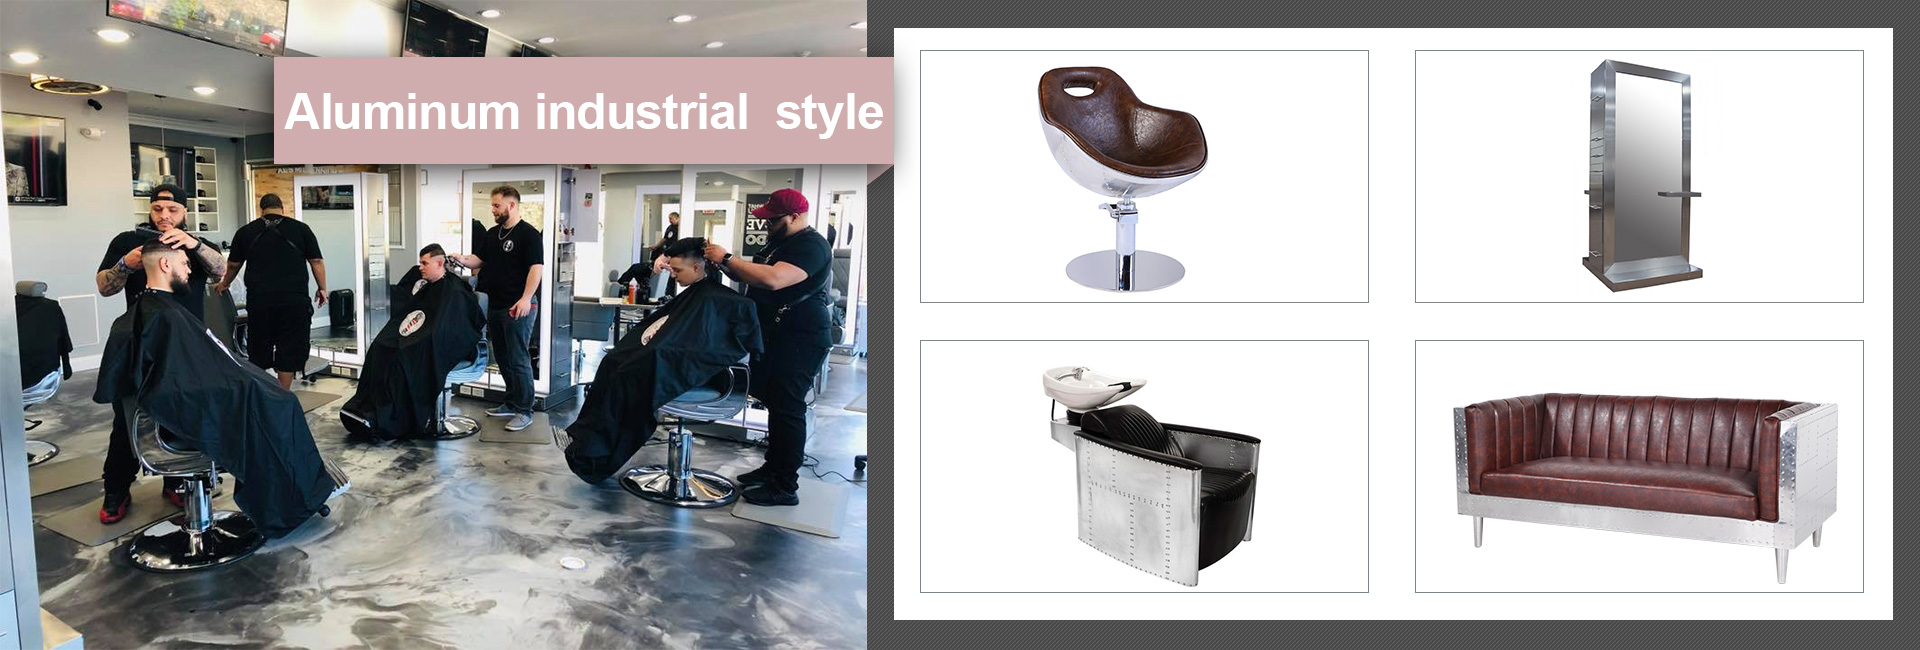 barber chair  
hair salon chair   
mirror station 
hair salon mirror station  
waiting sofa   